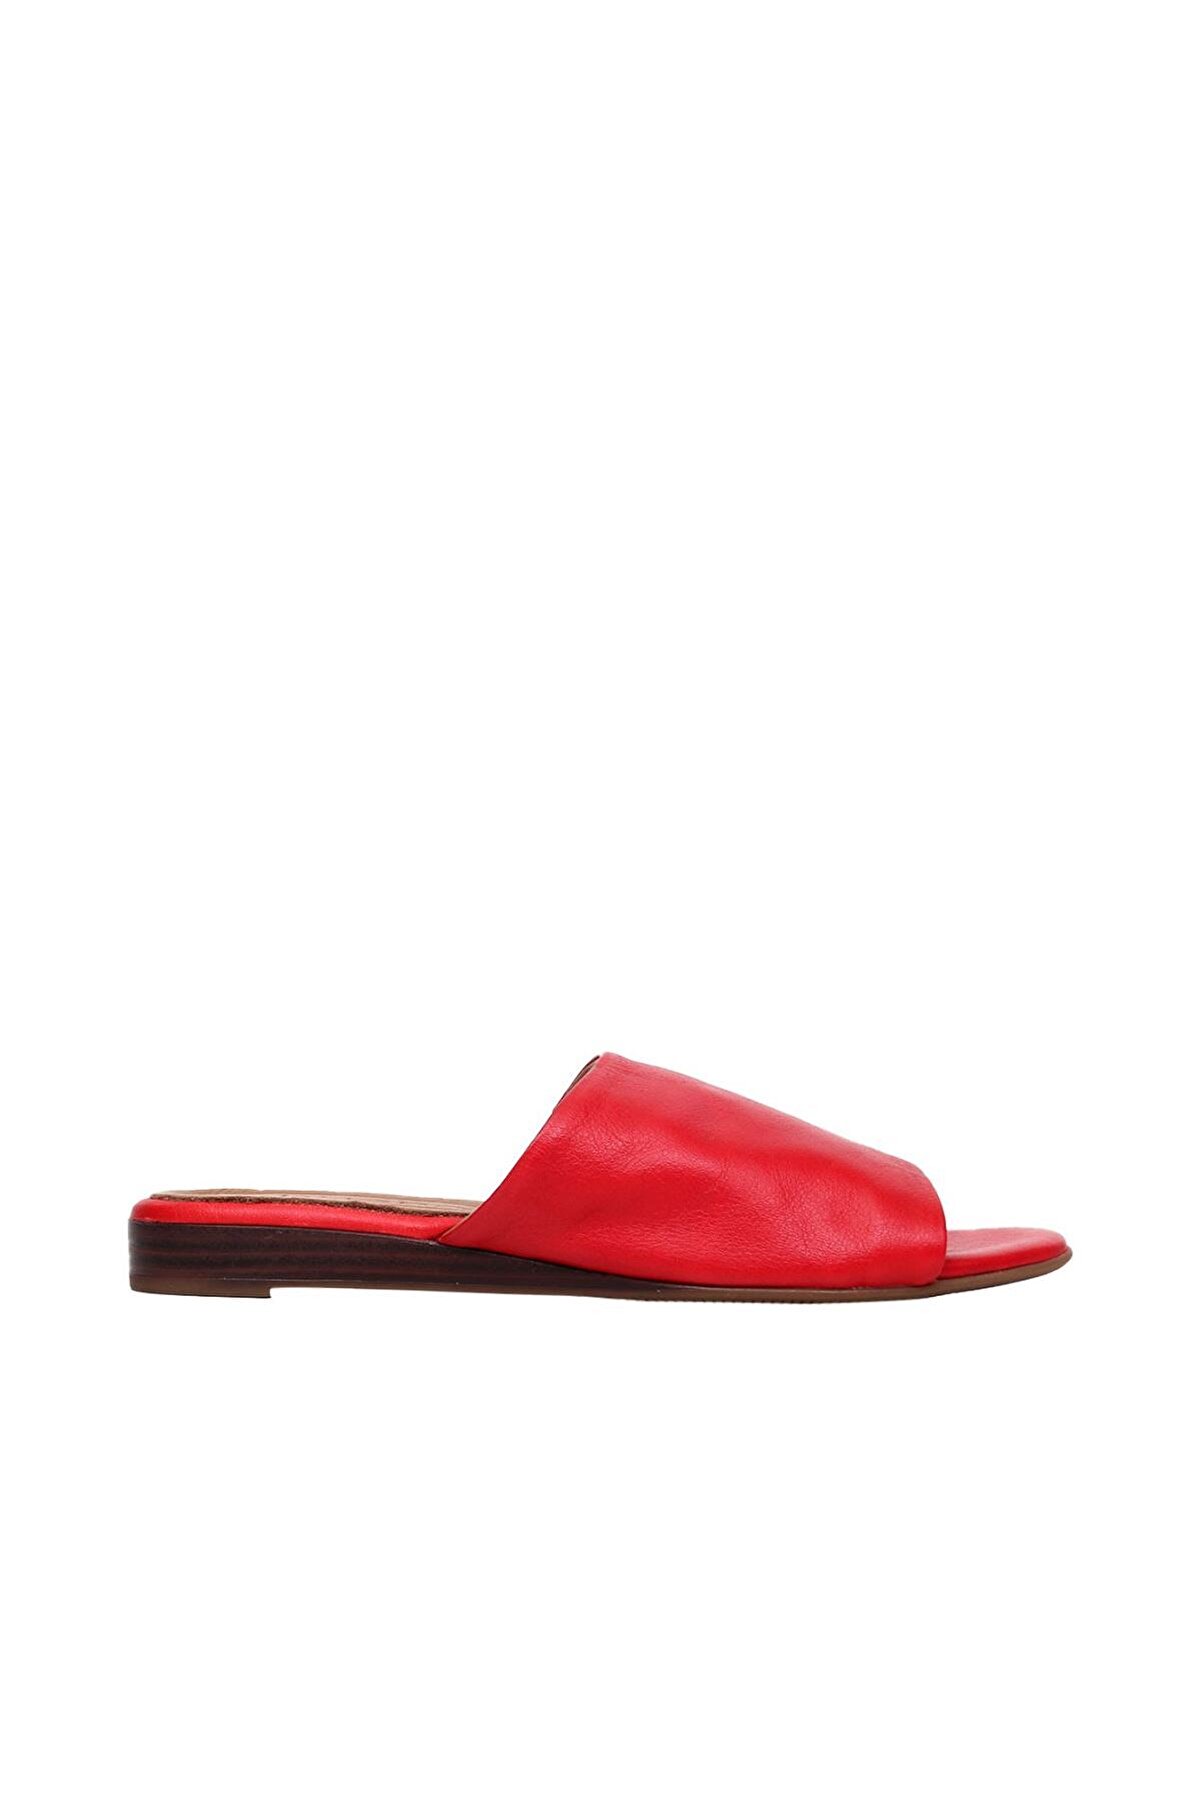 Genel Markalar Shoes Kırmızı Deri Kadın Düz Terlik